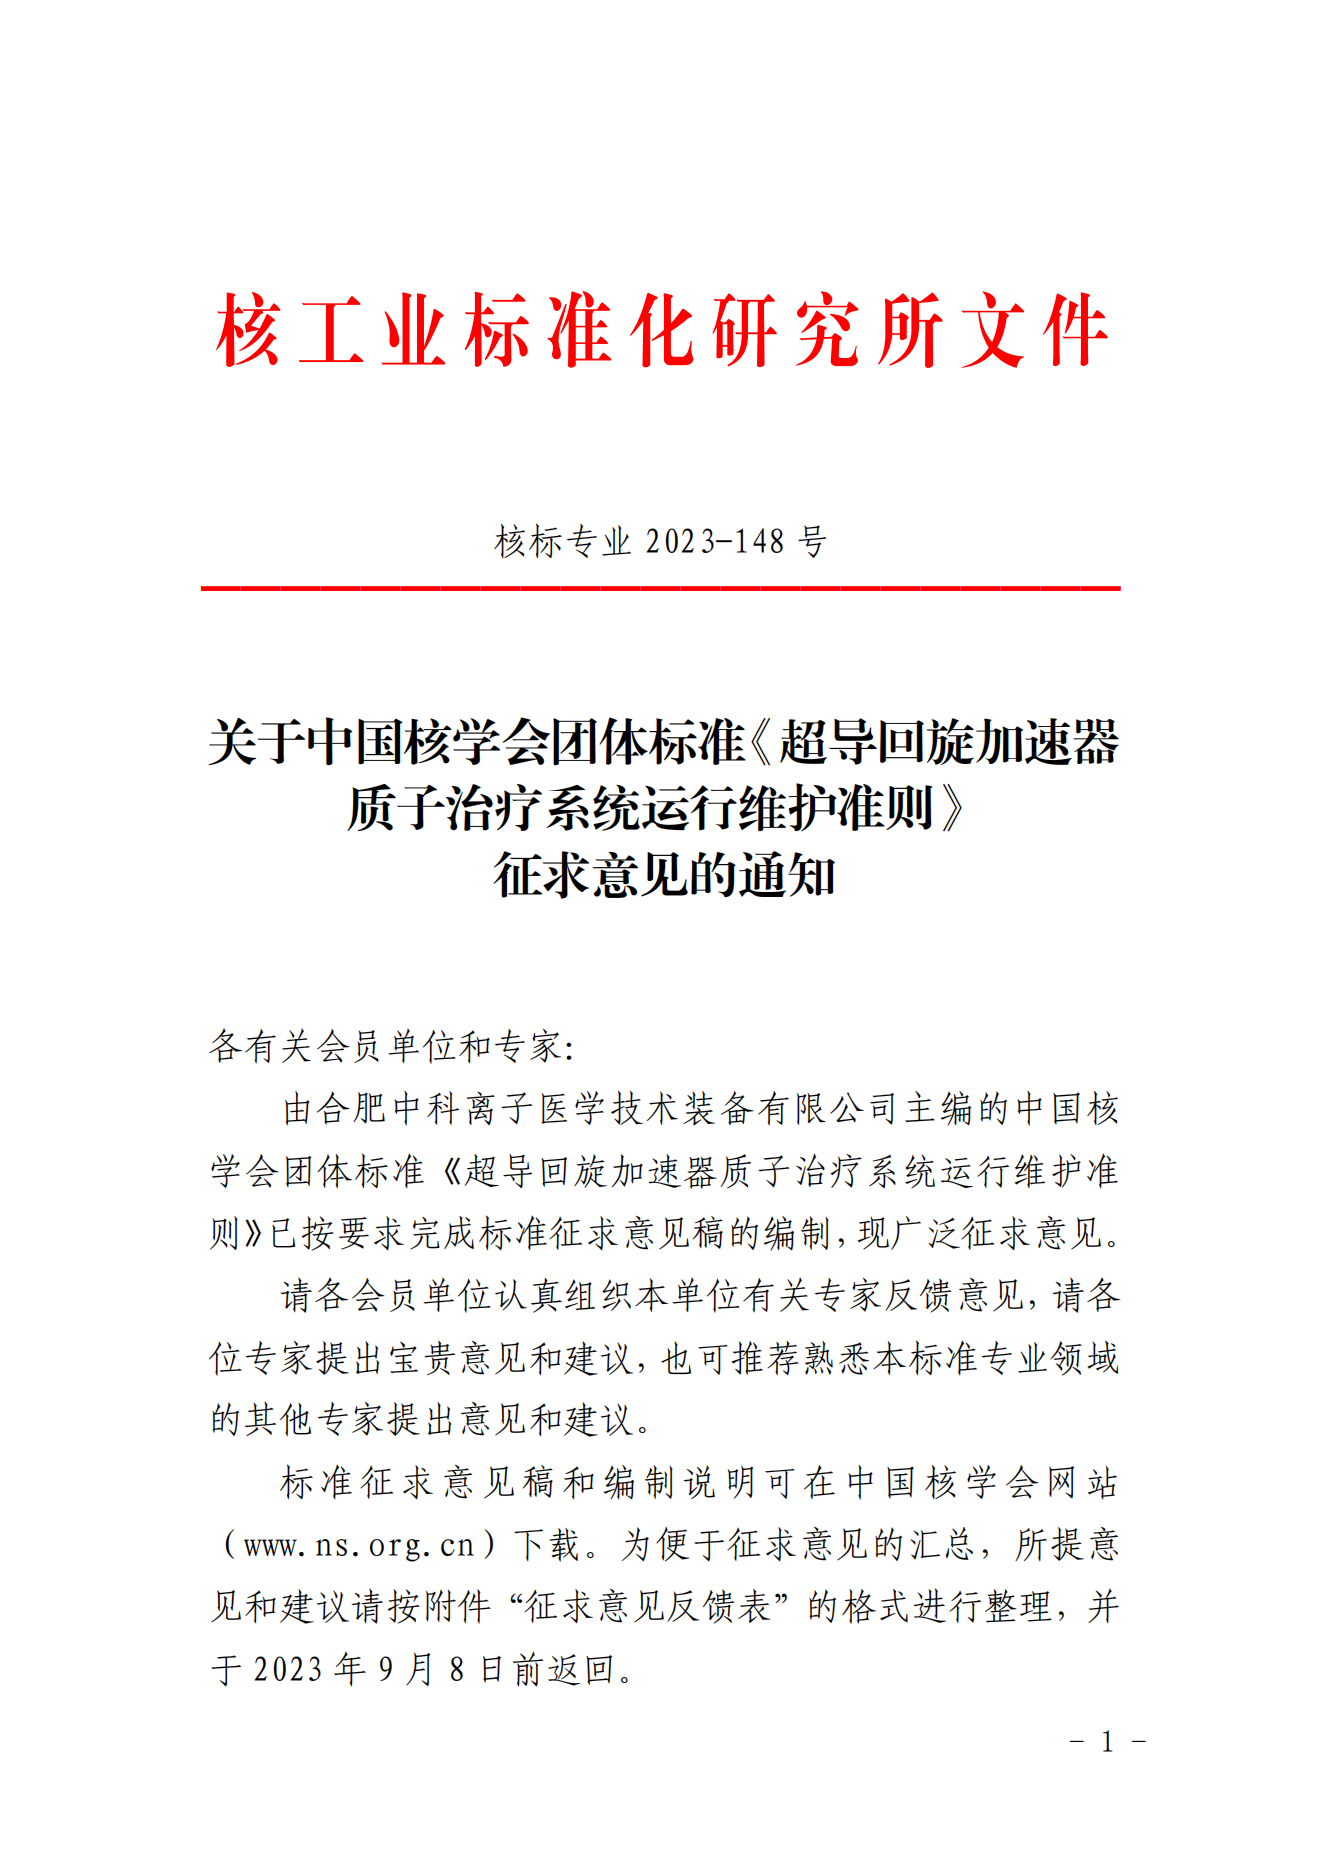 关于中国核学会团体标准《超导回旋加速器质子治疗系统运行维护准则》征求意见的通知_00.png